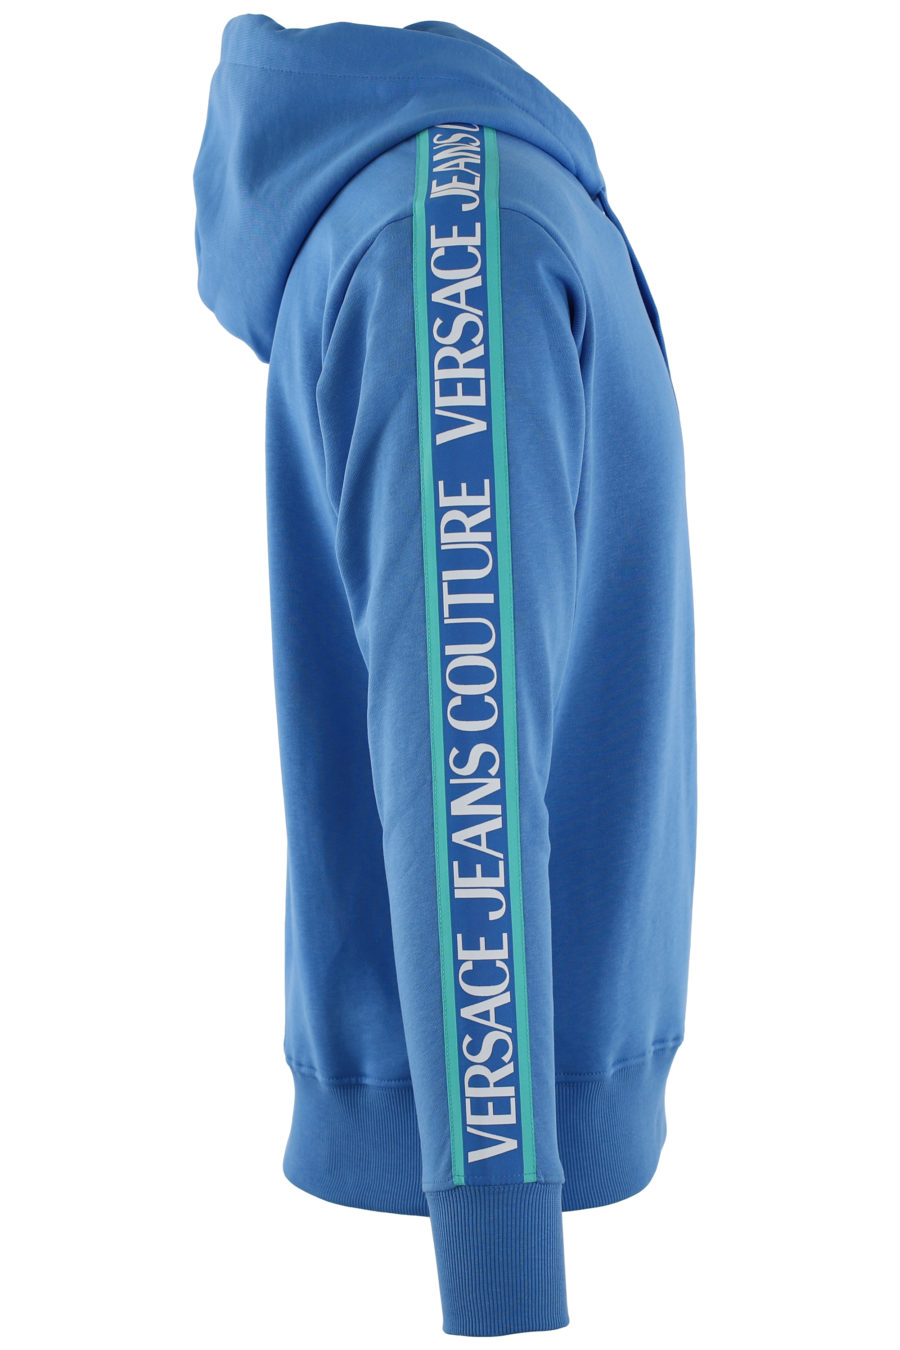 Camisola azul com capuz e fita azul com logótipo - IMG 0456